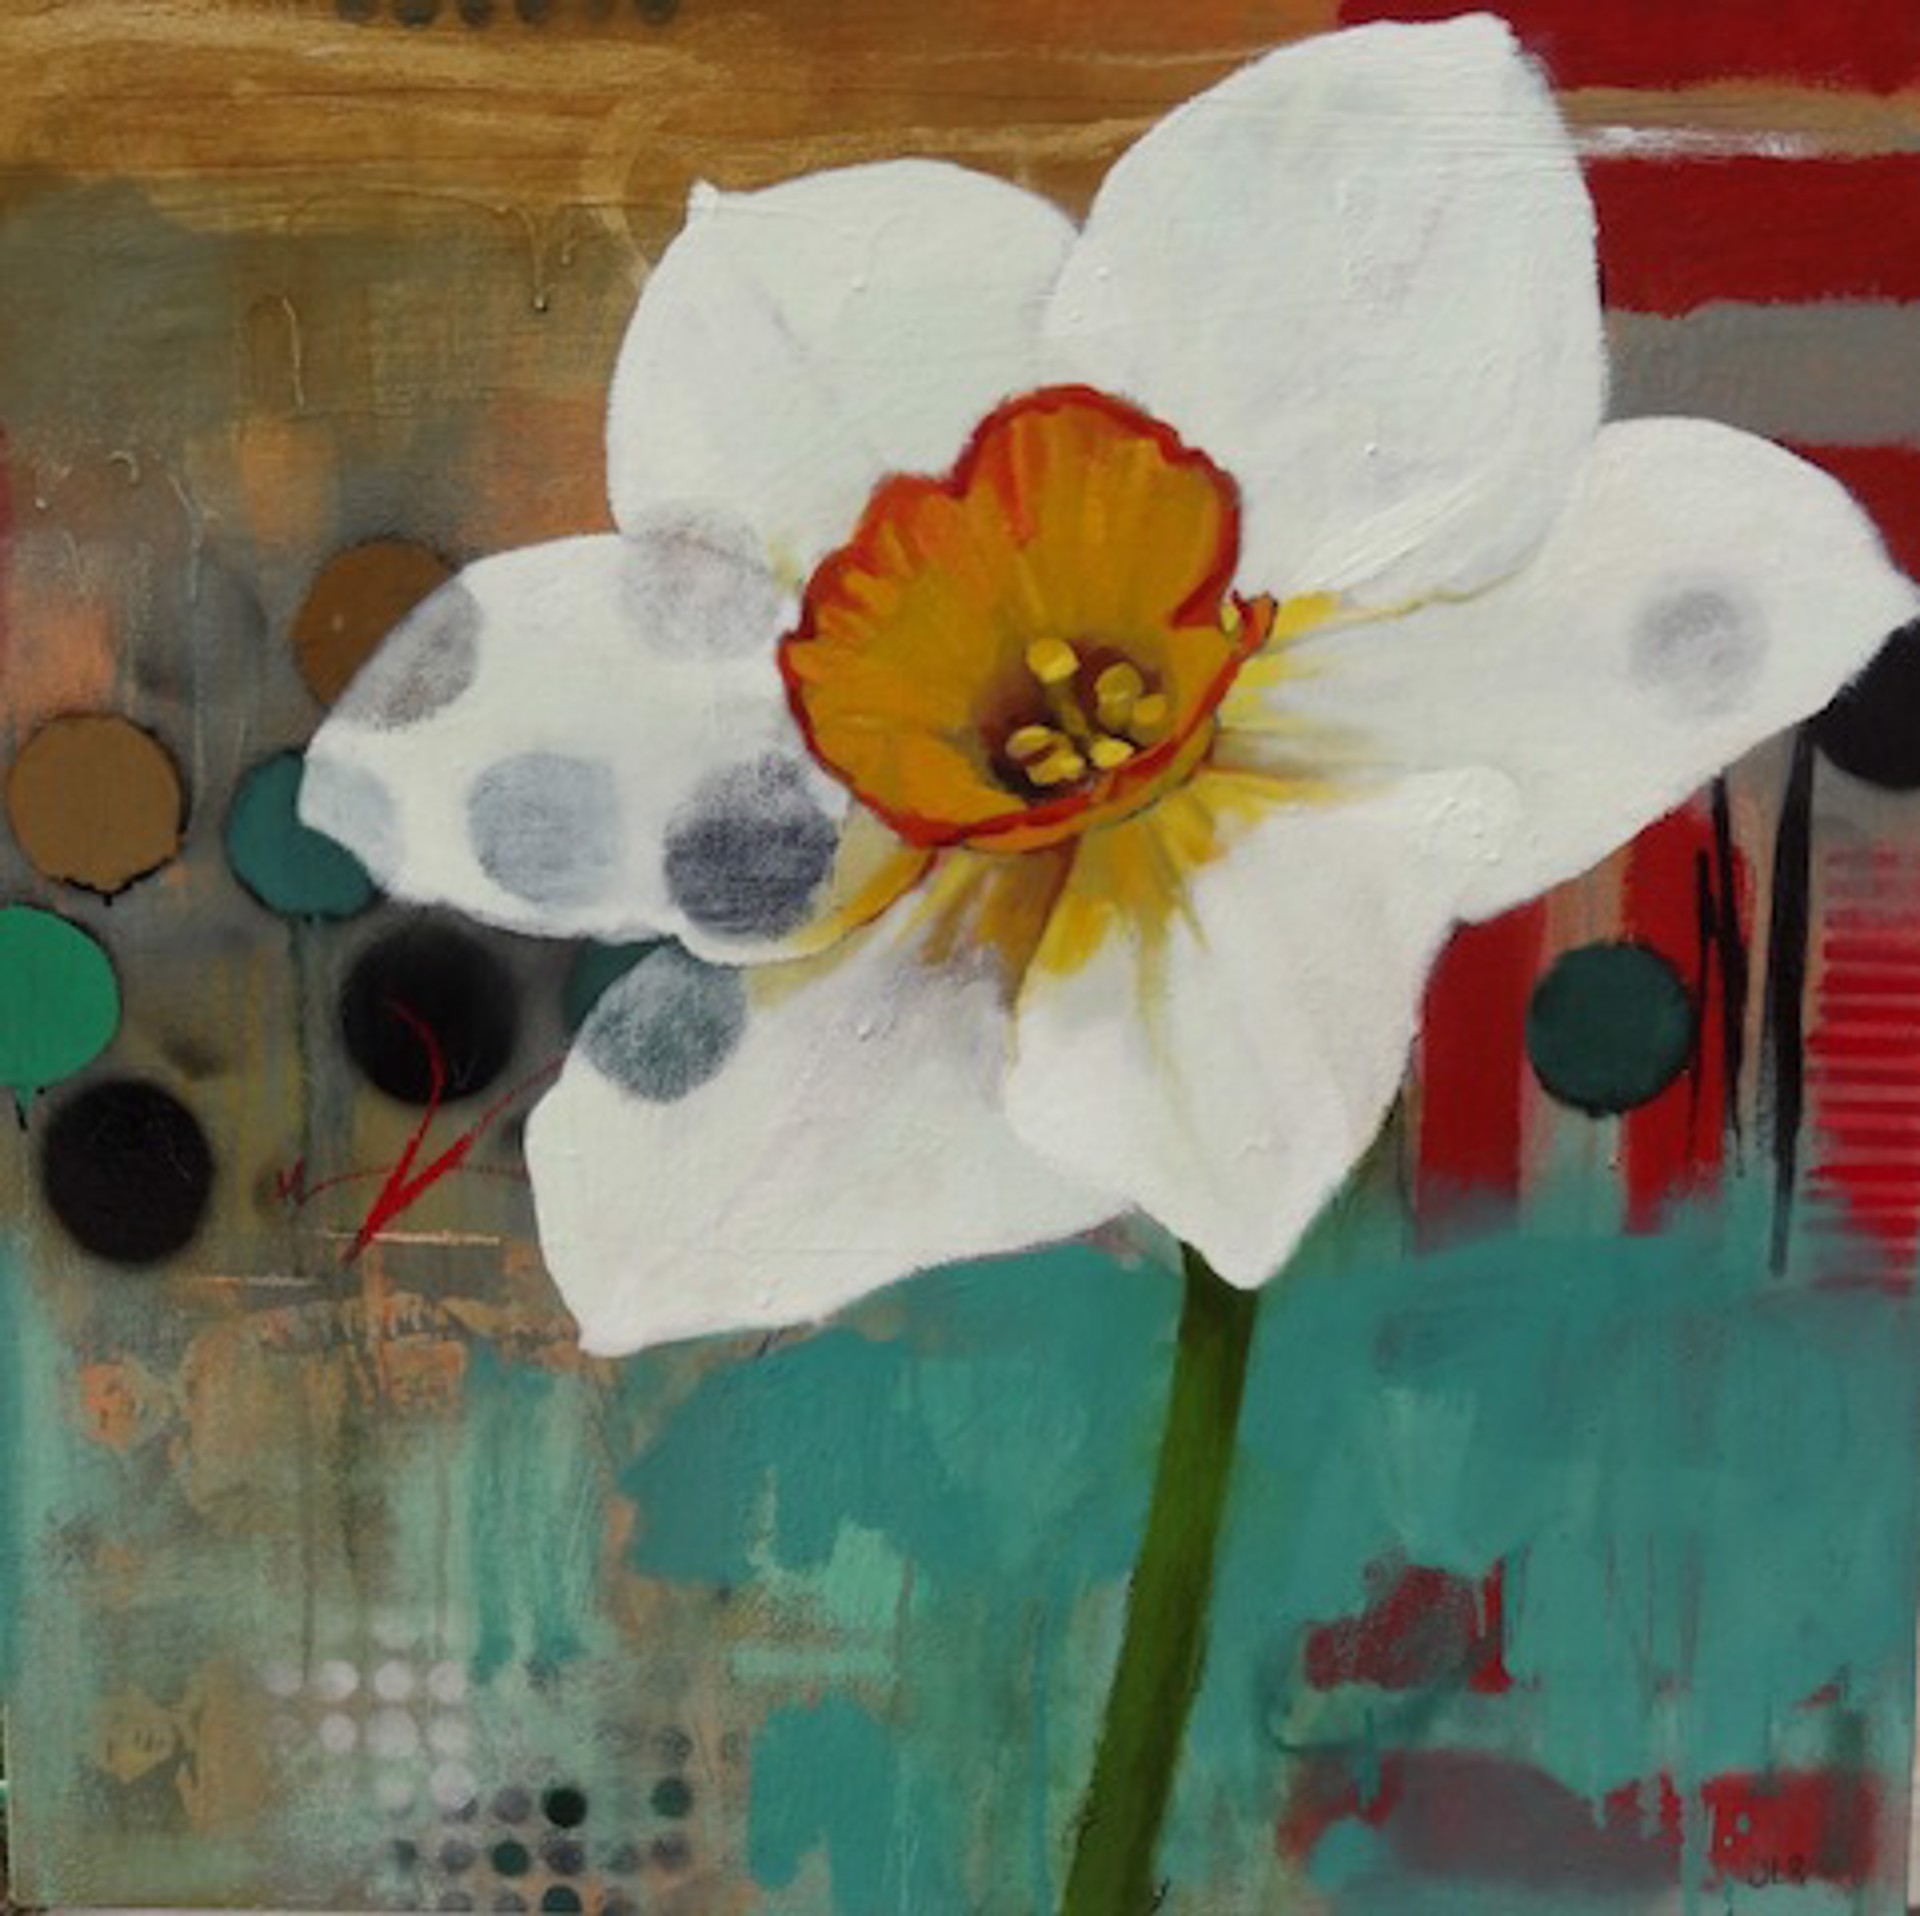 Daffodil Mannerisms by Jennifer Rasmusson